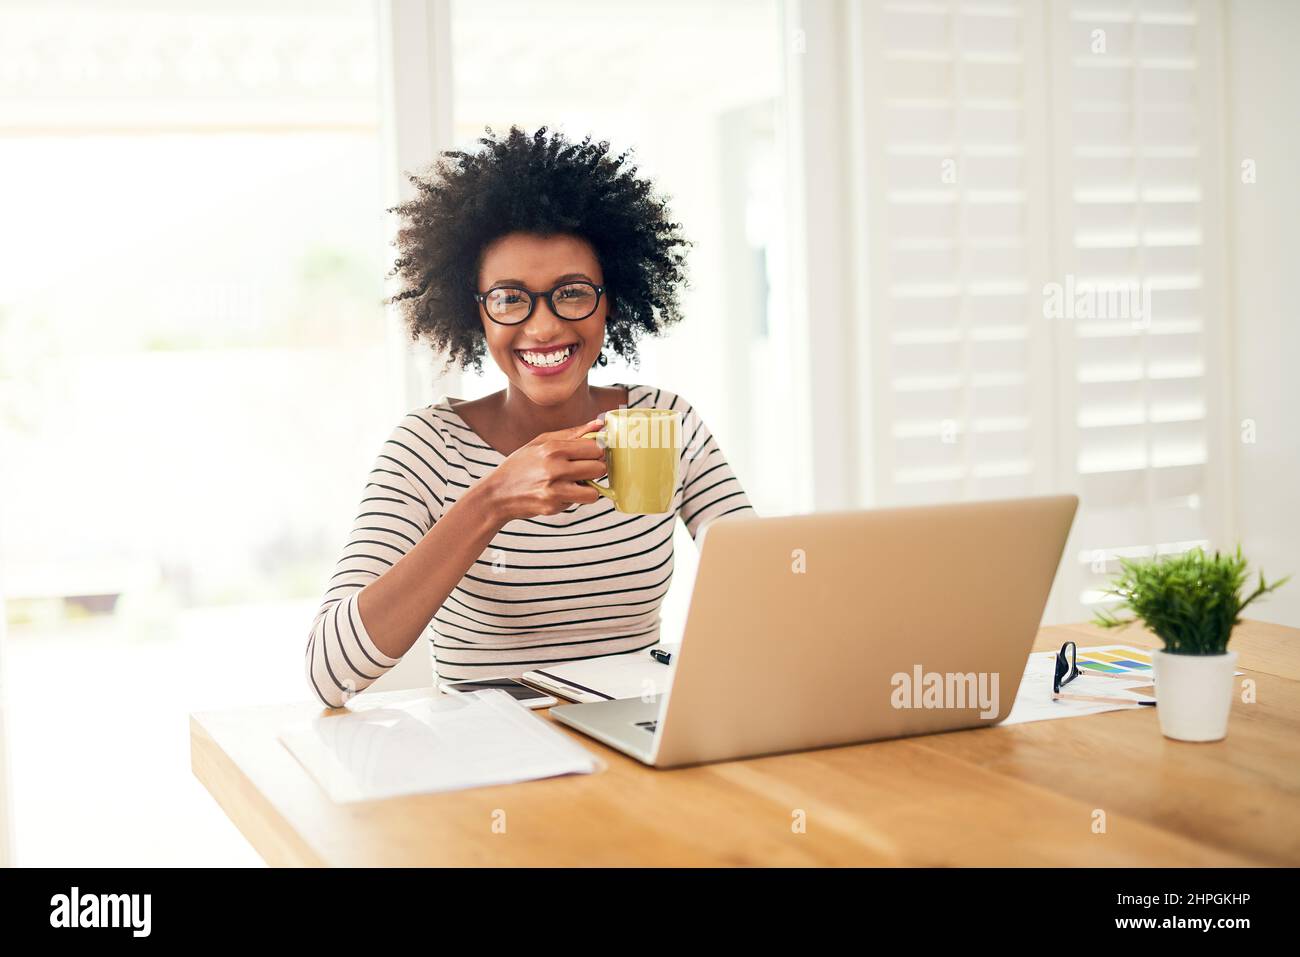 Niente di meglio di una tazza di comfort per iniziare la giornata. Ritratto di una giovane donna che beve caffè mentre lavora sul suo portatile a casa. Foto Stock